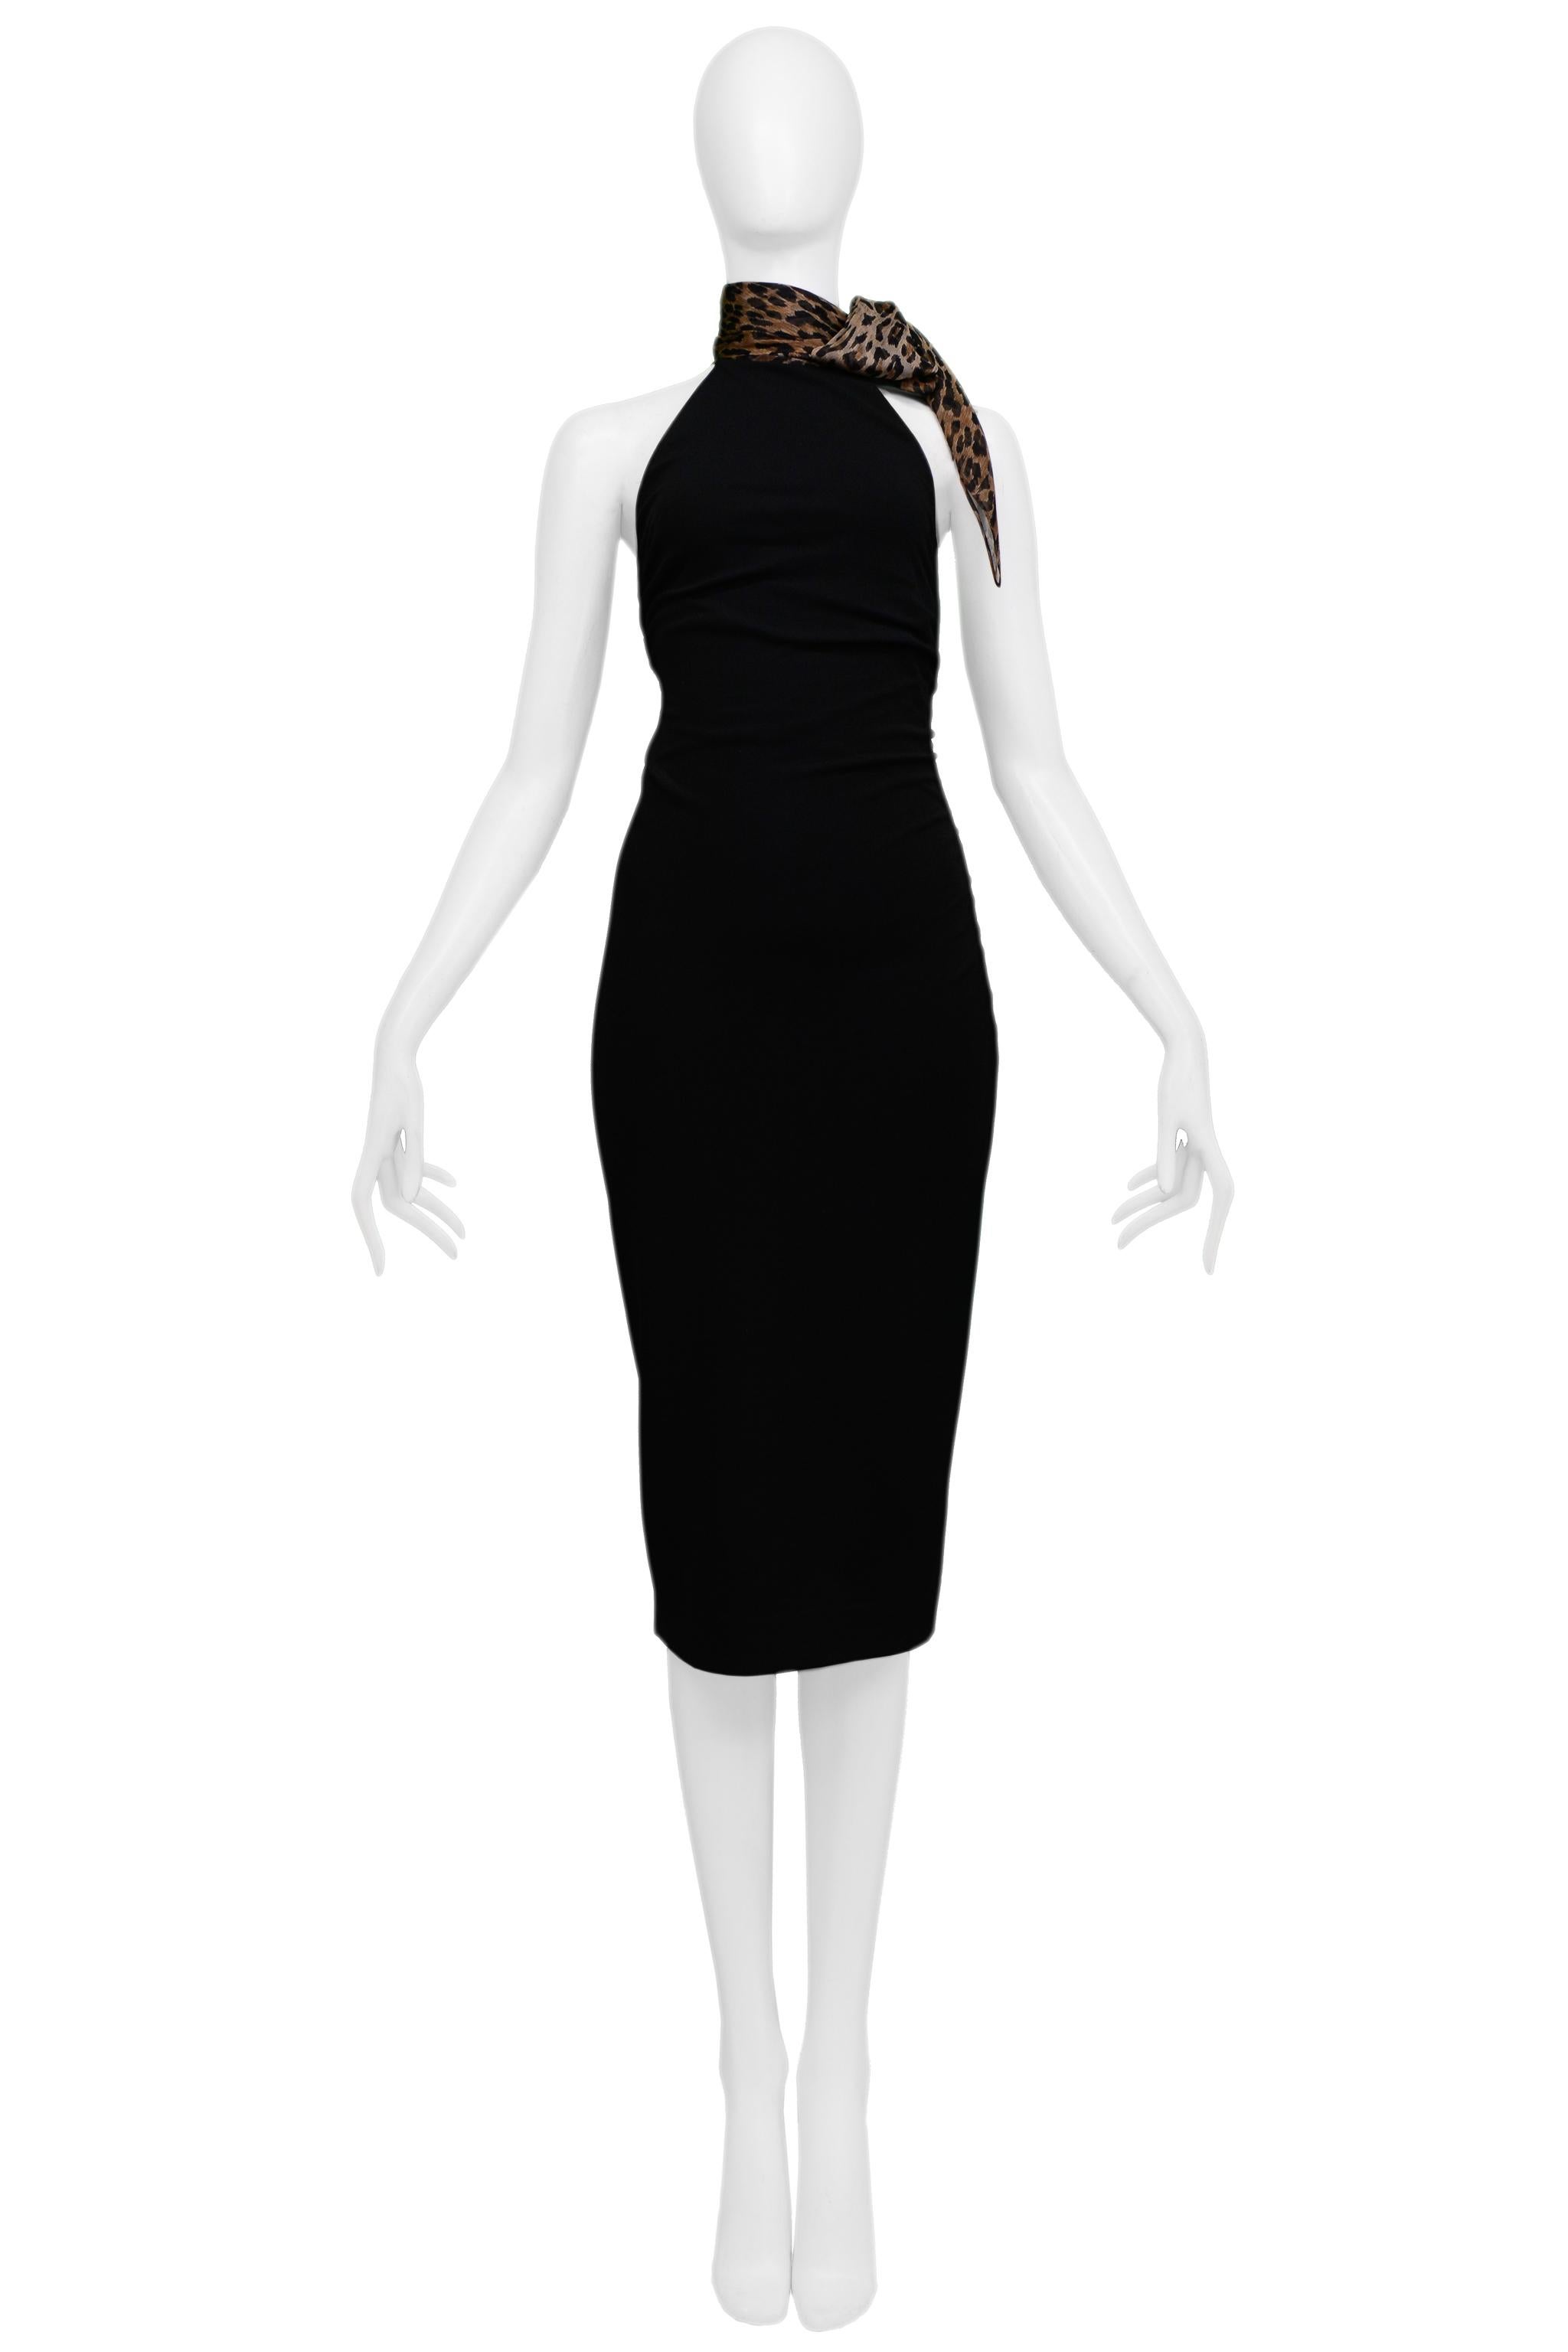 Resurrection Vintage a le plaisir de vous proposer une robe vintage Dolce & Gabbana en viscose noire avec une écharpe léopard attachée, avec un corps ajusté, un corsage coupé en diagonale, des épaules apparentes et une longueur juste en dessous du